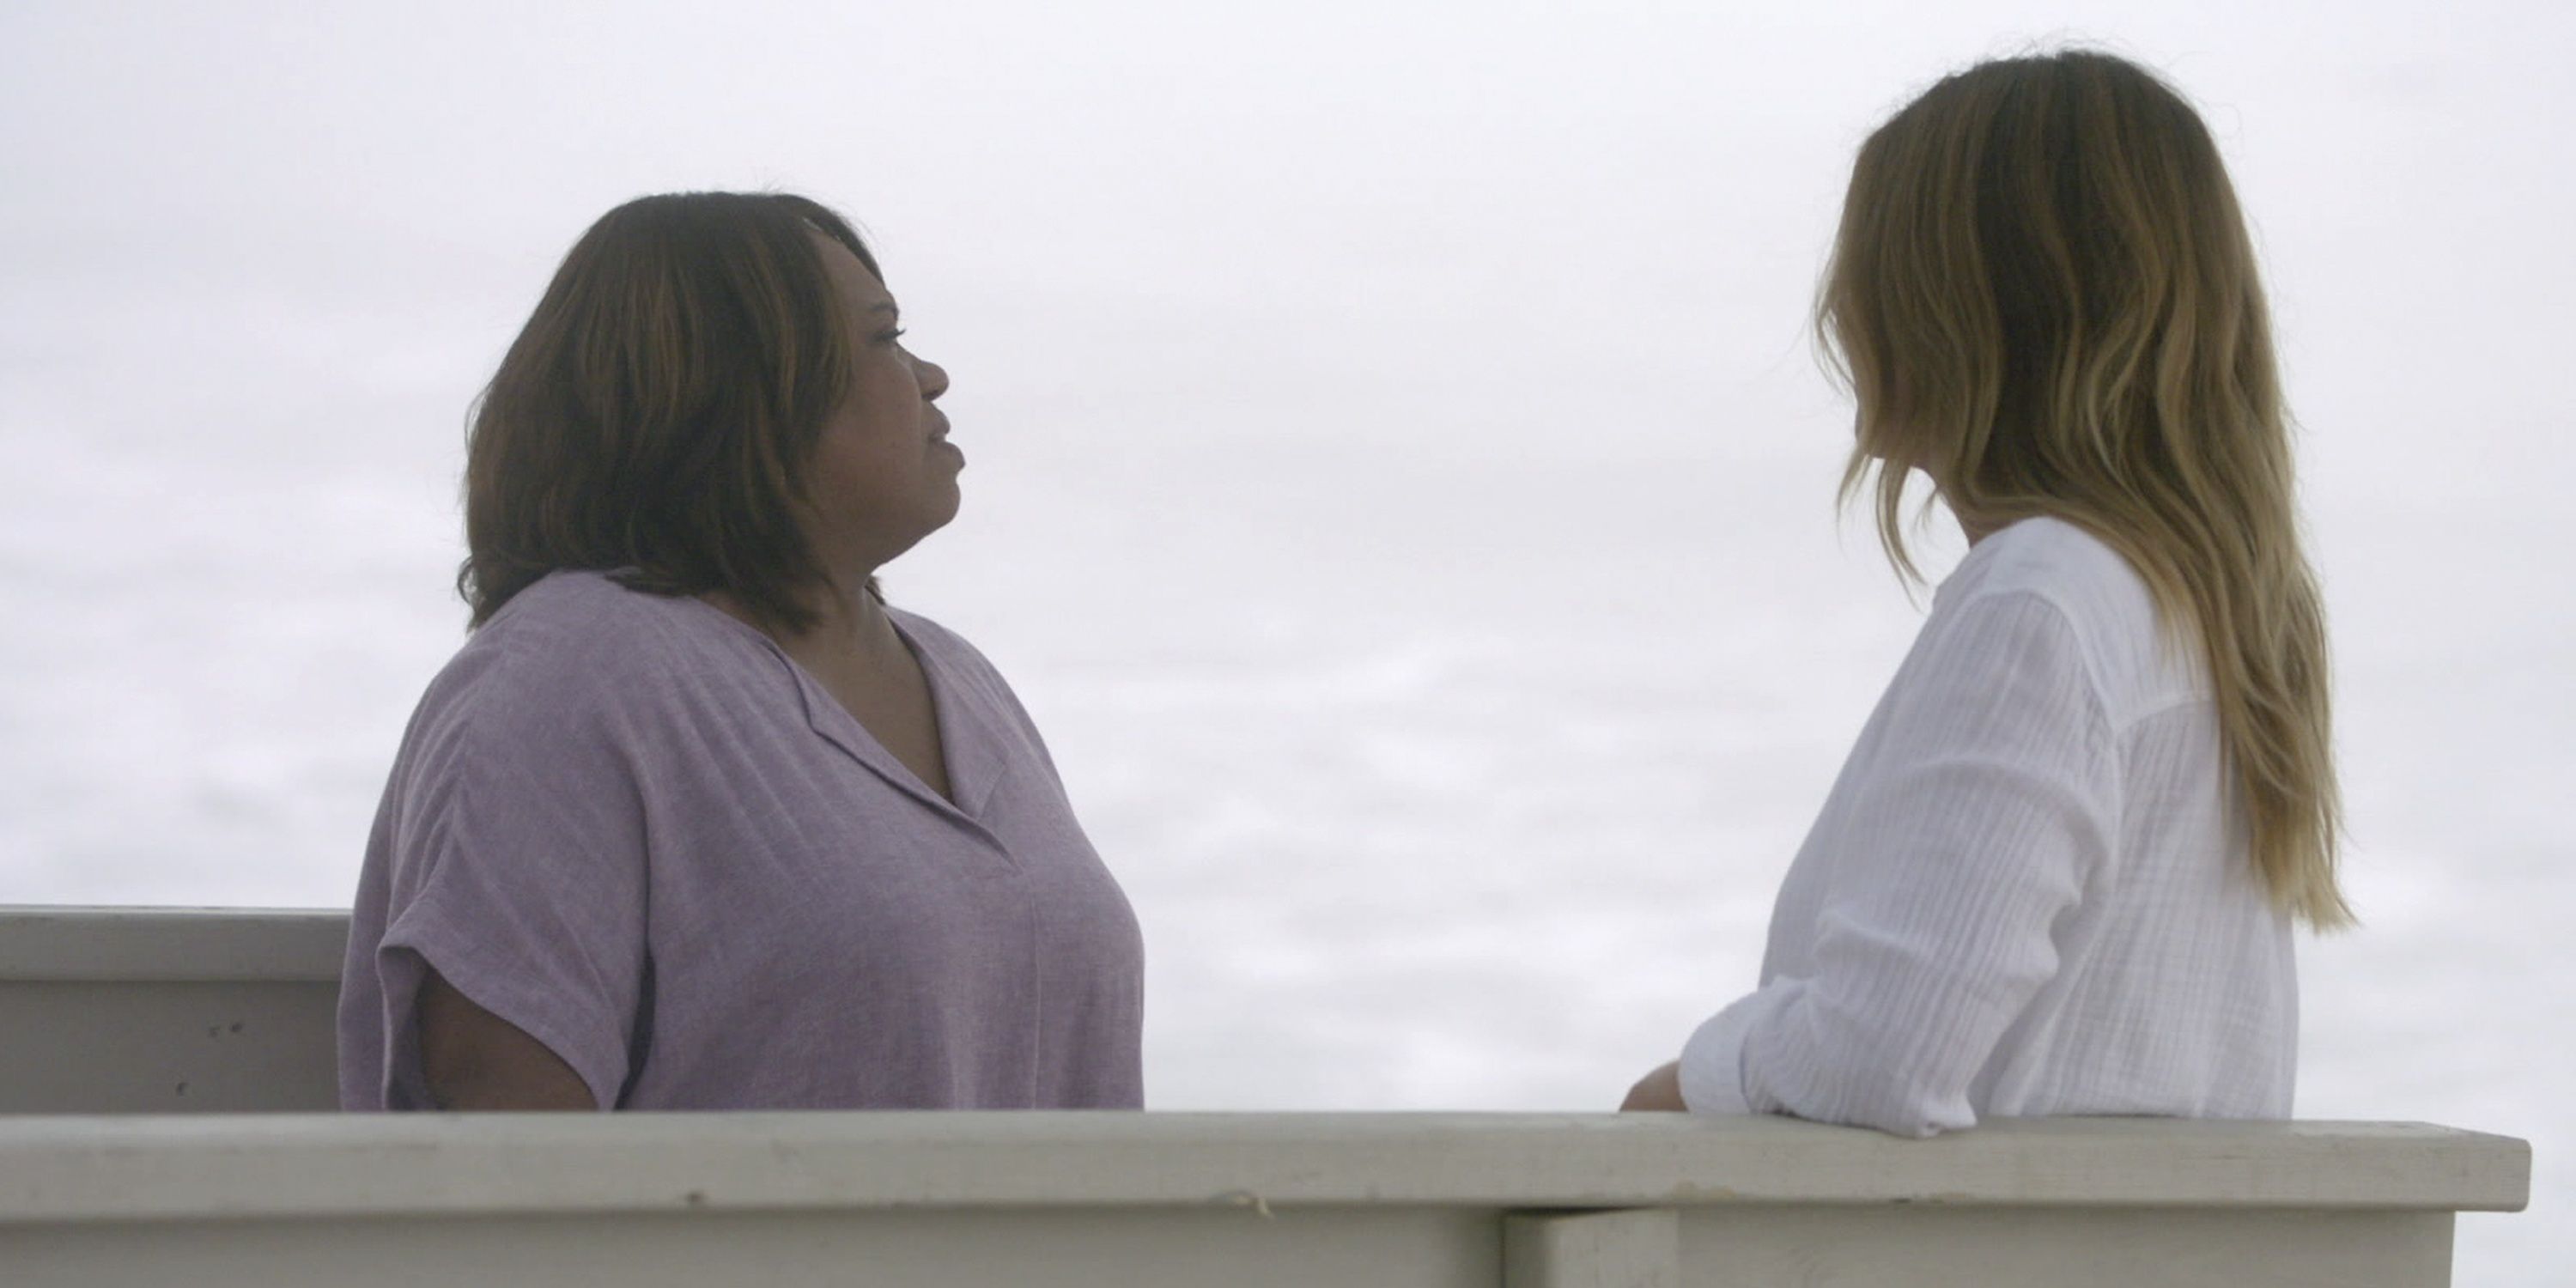 Bailey aparece para Meredith em um sonho na praia em Grey's Anatomy